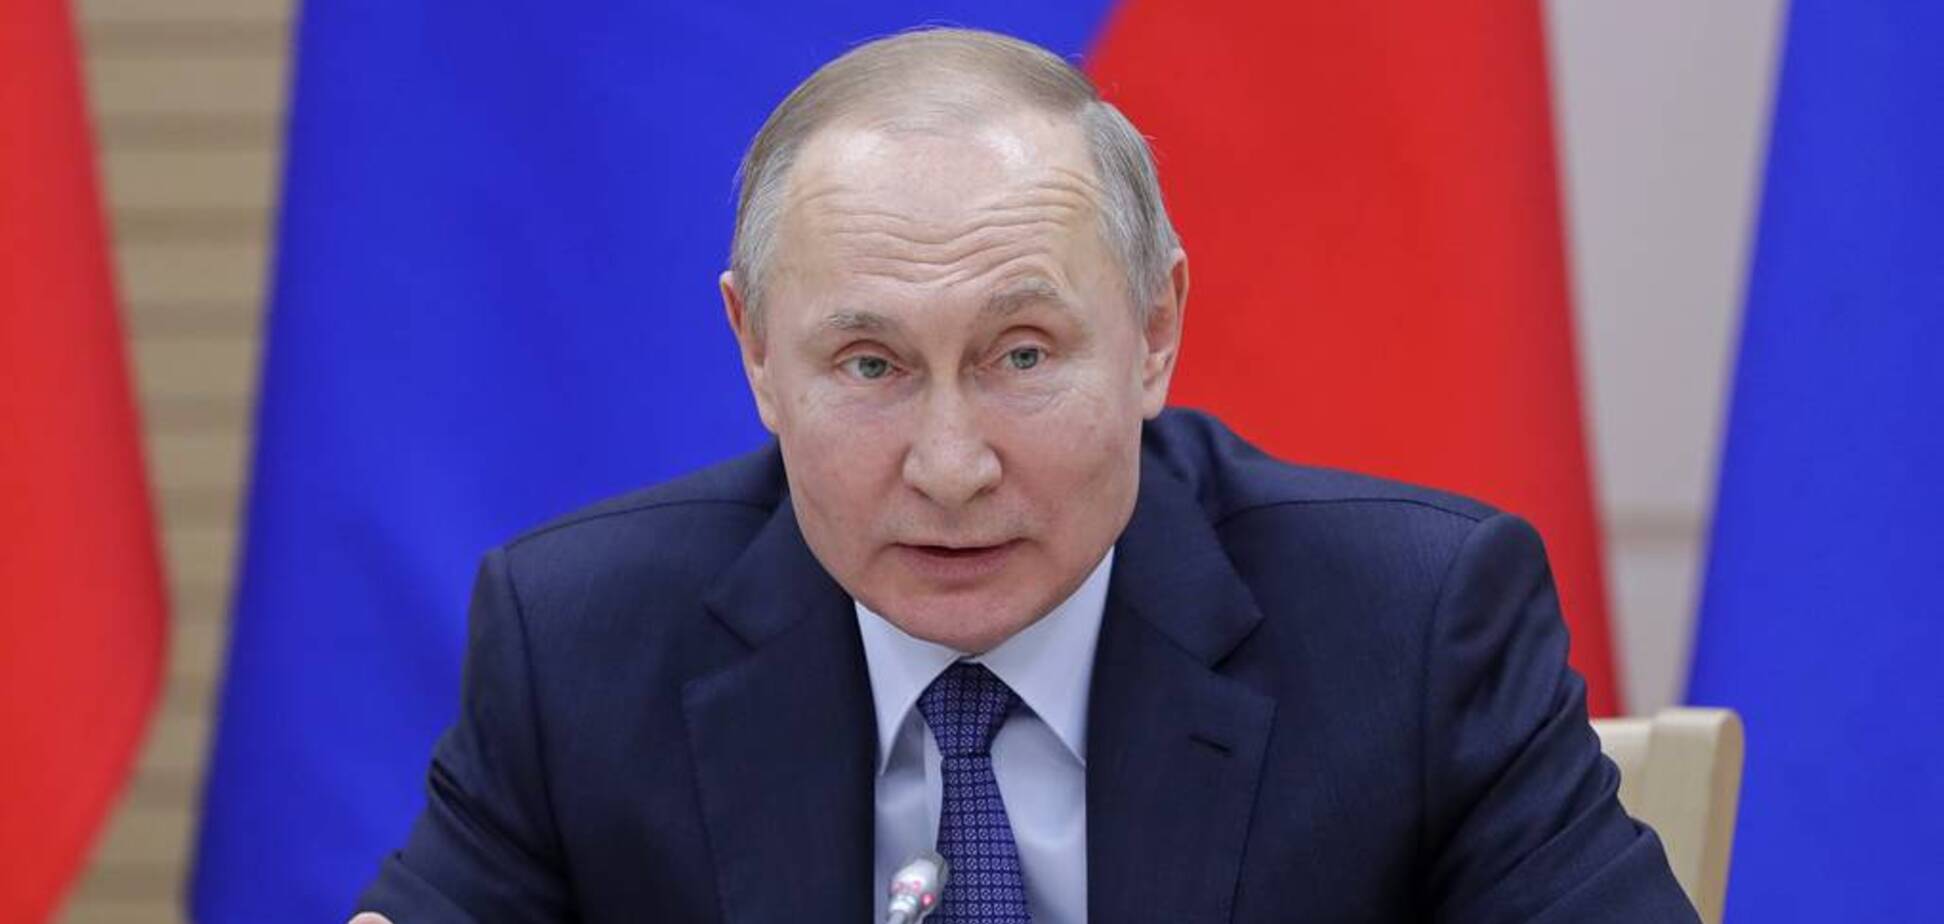 Путин прикарманил землю в Крыму: в чем суть скандального решения